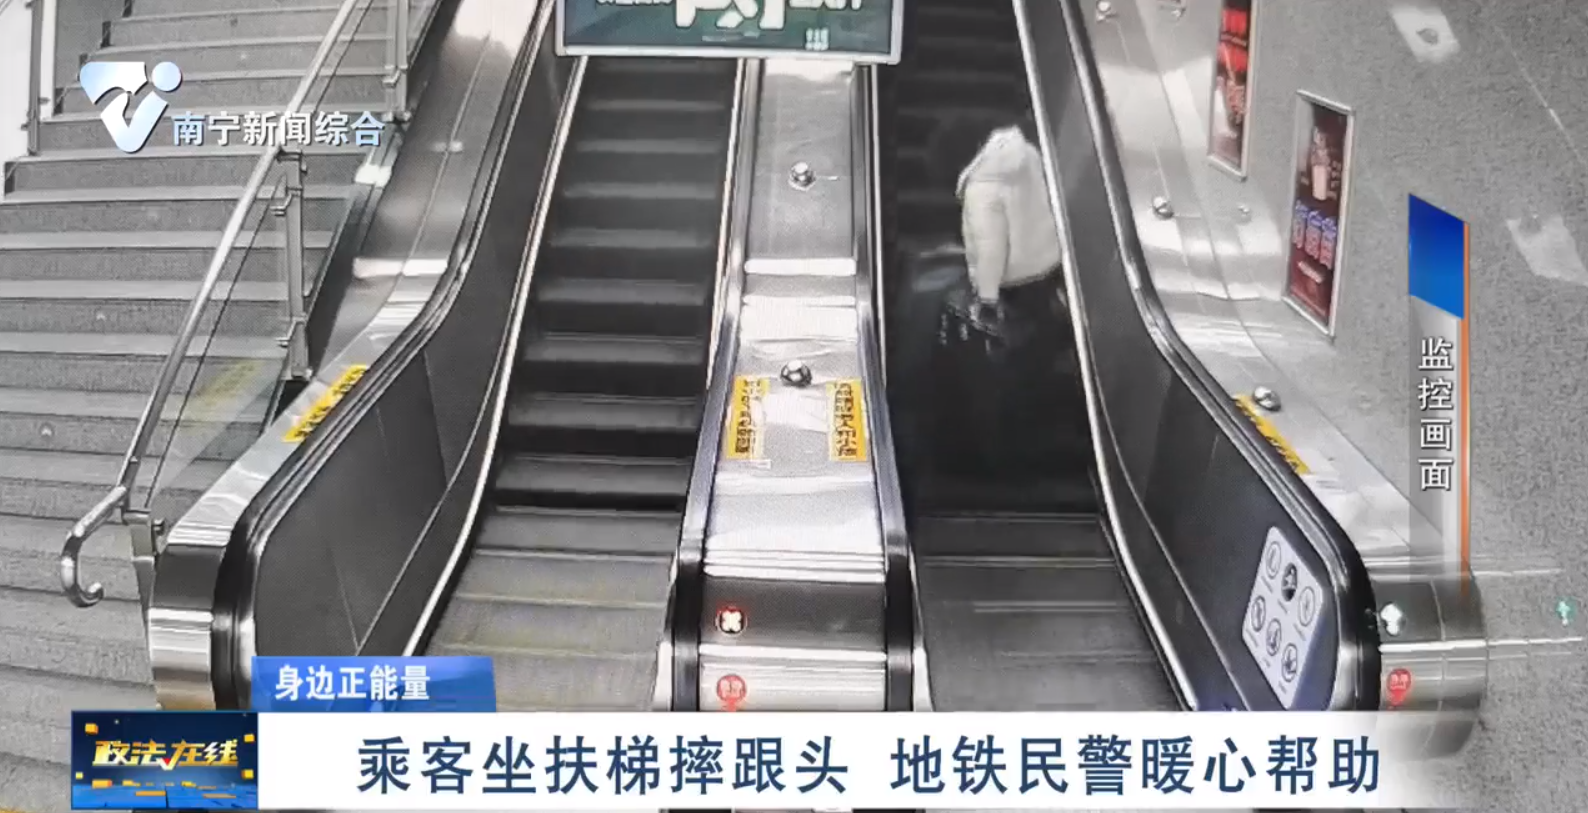 乘客坐扶梯摔跟頭 地鐵民警暖心幫助